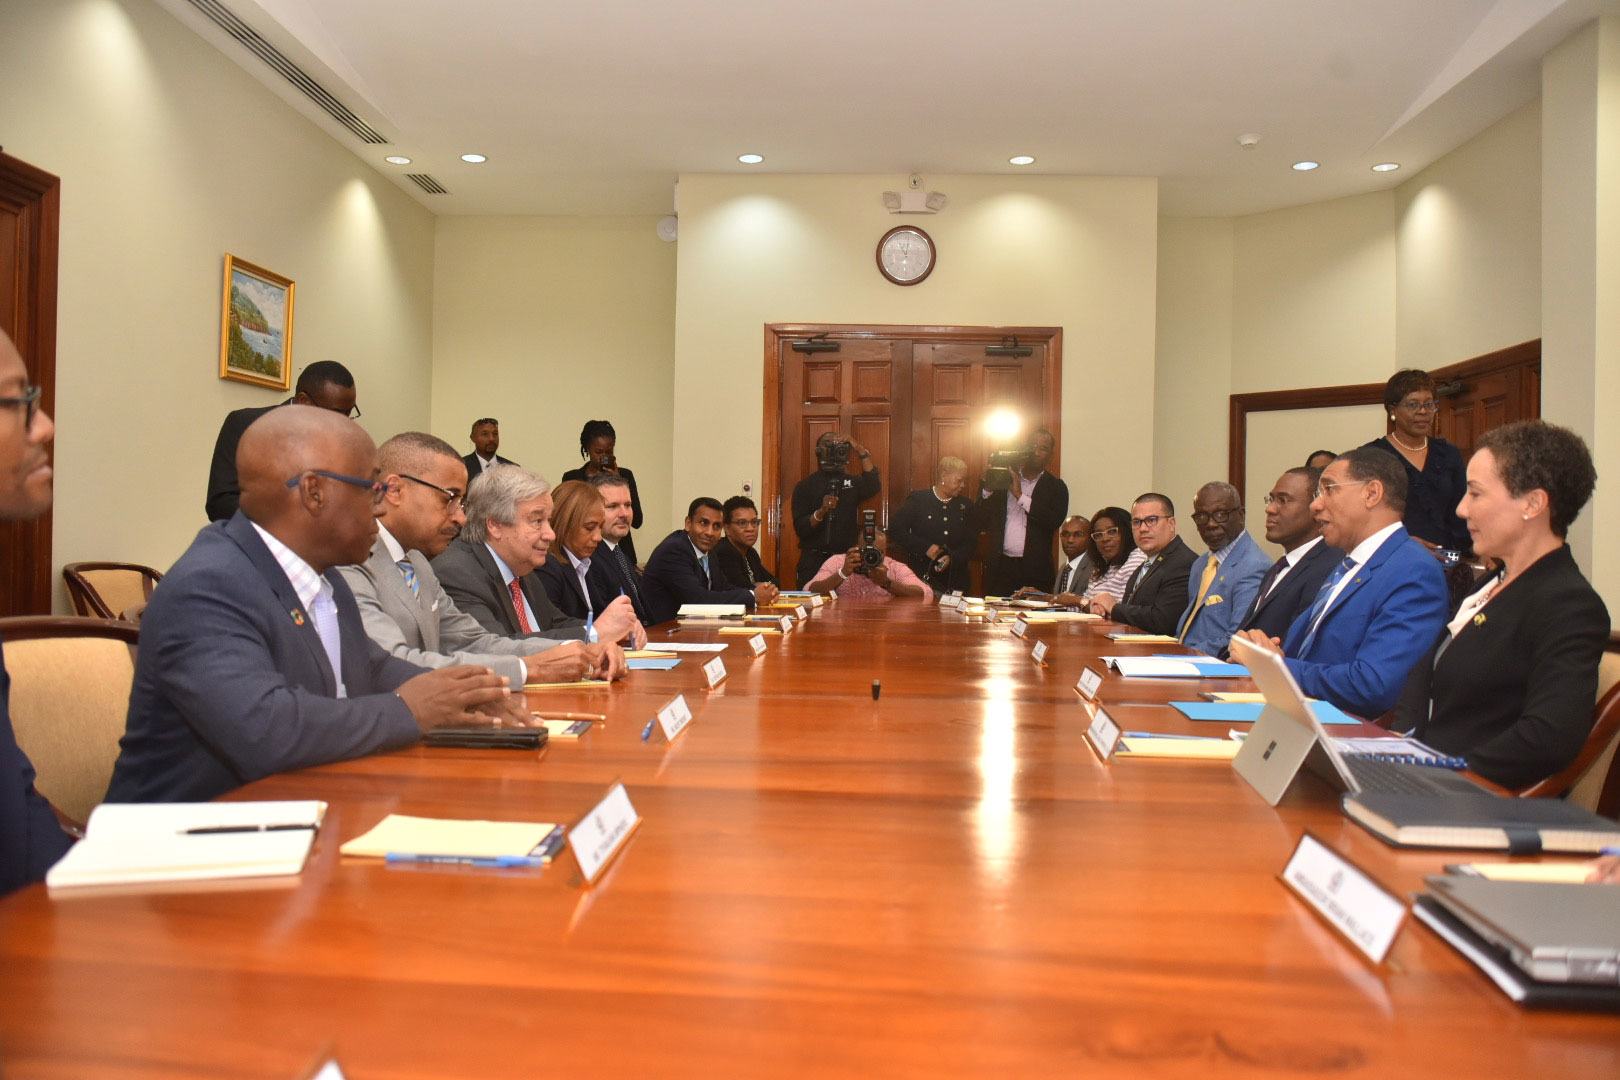 الأمين العام أنطونيو غوتيريش والوفد المرافق له خلال اجتماعهم الثنائي مع رئيس وزراء جامايكا أندرو هولنس وأعضاء في حكومته.